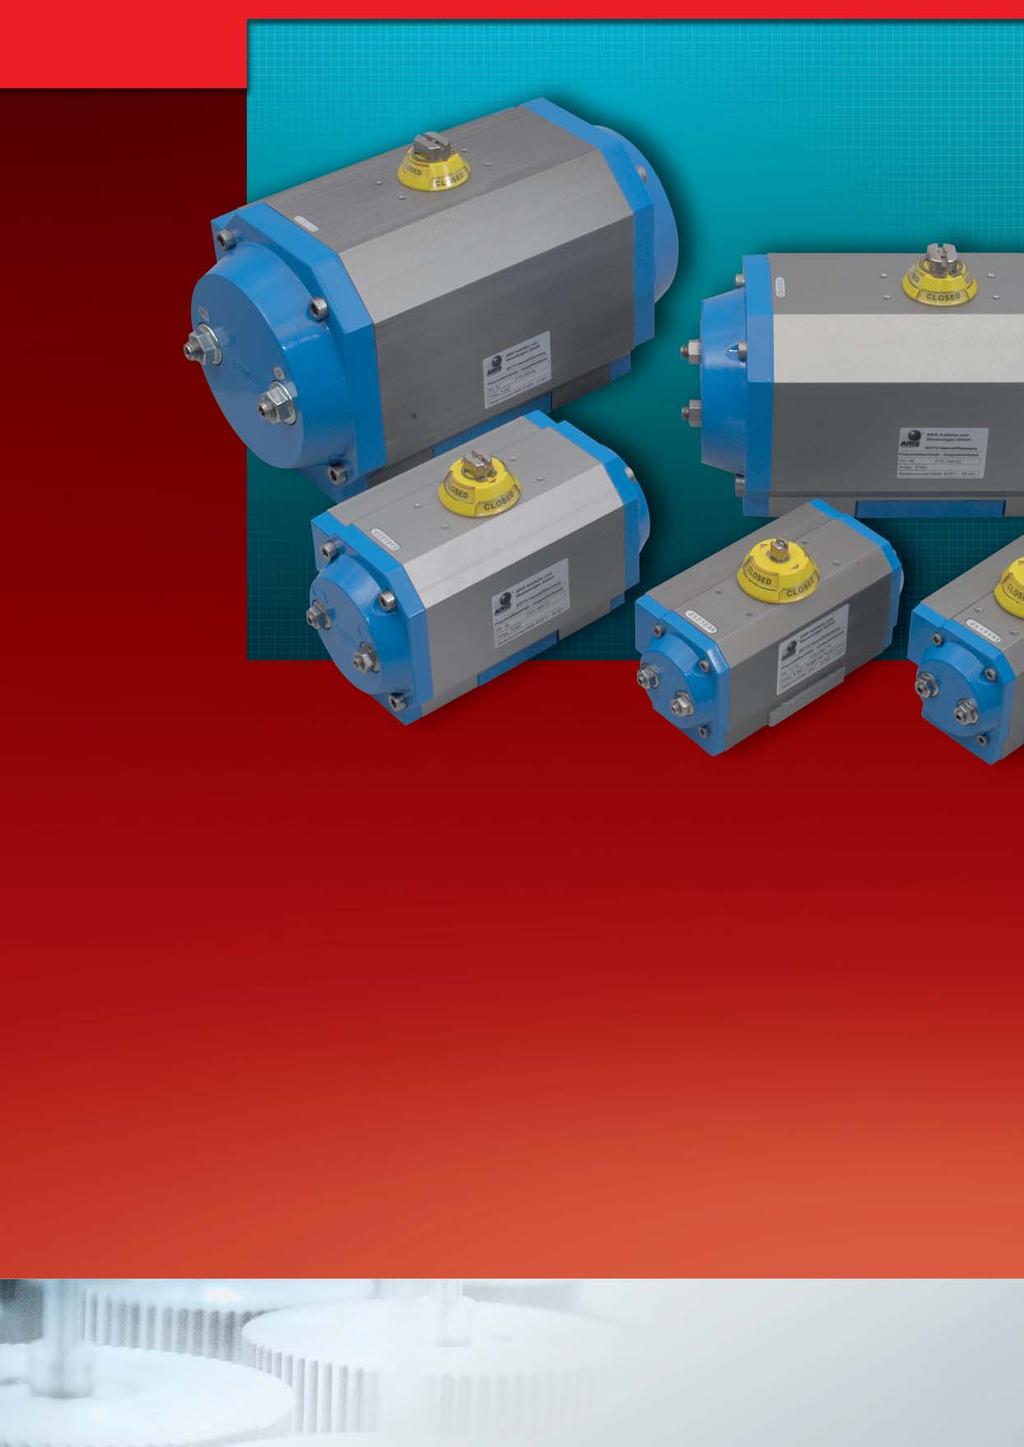 ARIS pneumatische Schwenkantriebe bieten höchste Zuverlässigkeit beim Bewegen, Regeln und Steuern für Ihre Anwendungen im industriellen Anlagenbau.